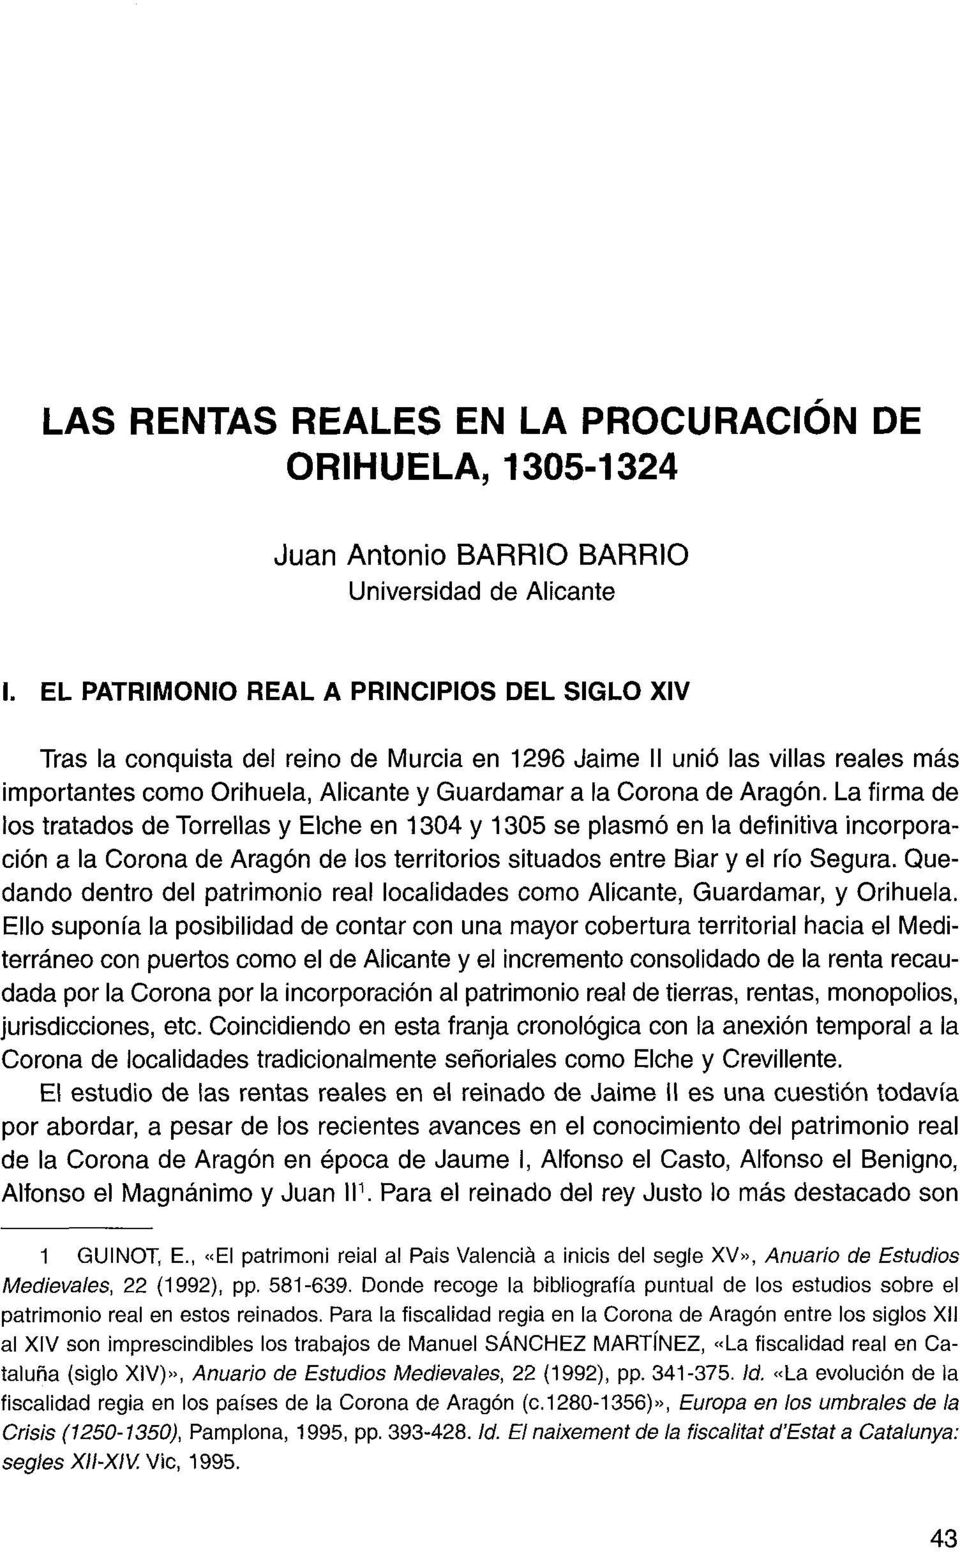 La firma de los tratados de Torrellas y Elche en 1304 y 1305 se plasmó en la definitiva incorporación a la Corona de Aragón de los territorios situados entre Biar y el río Segura.